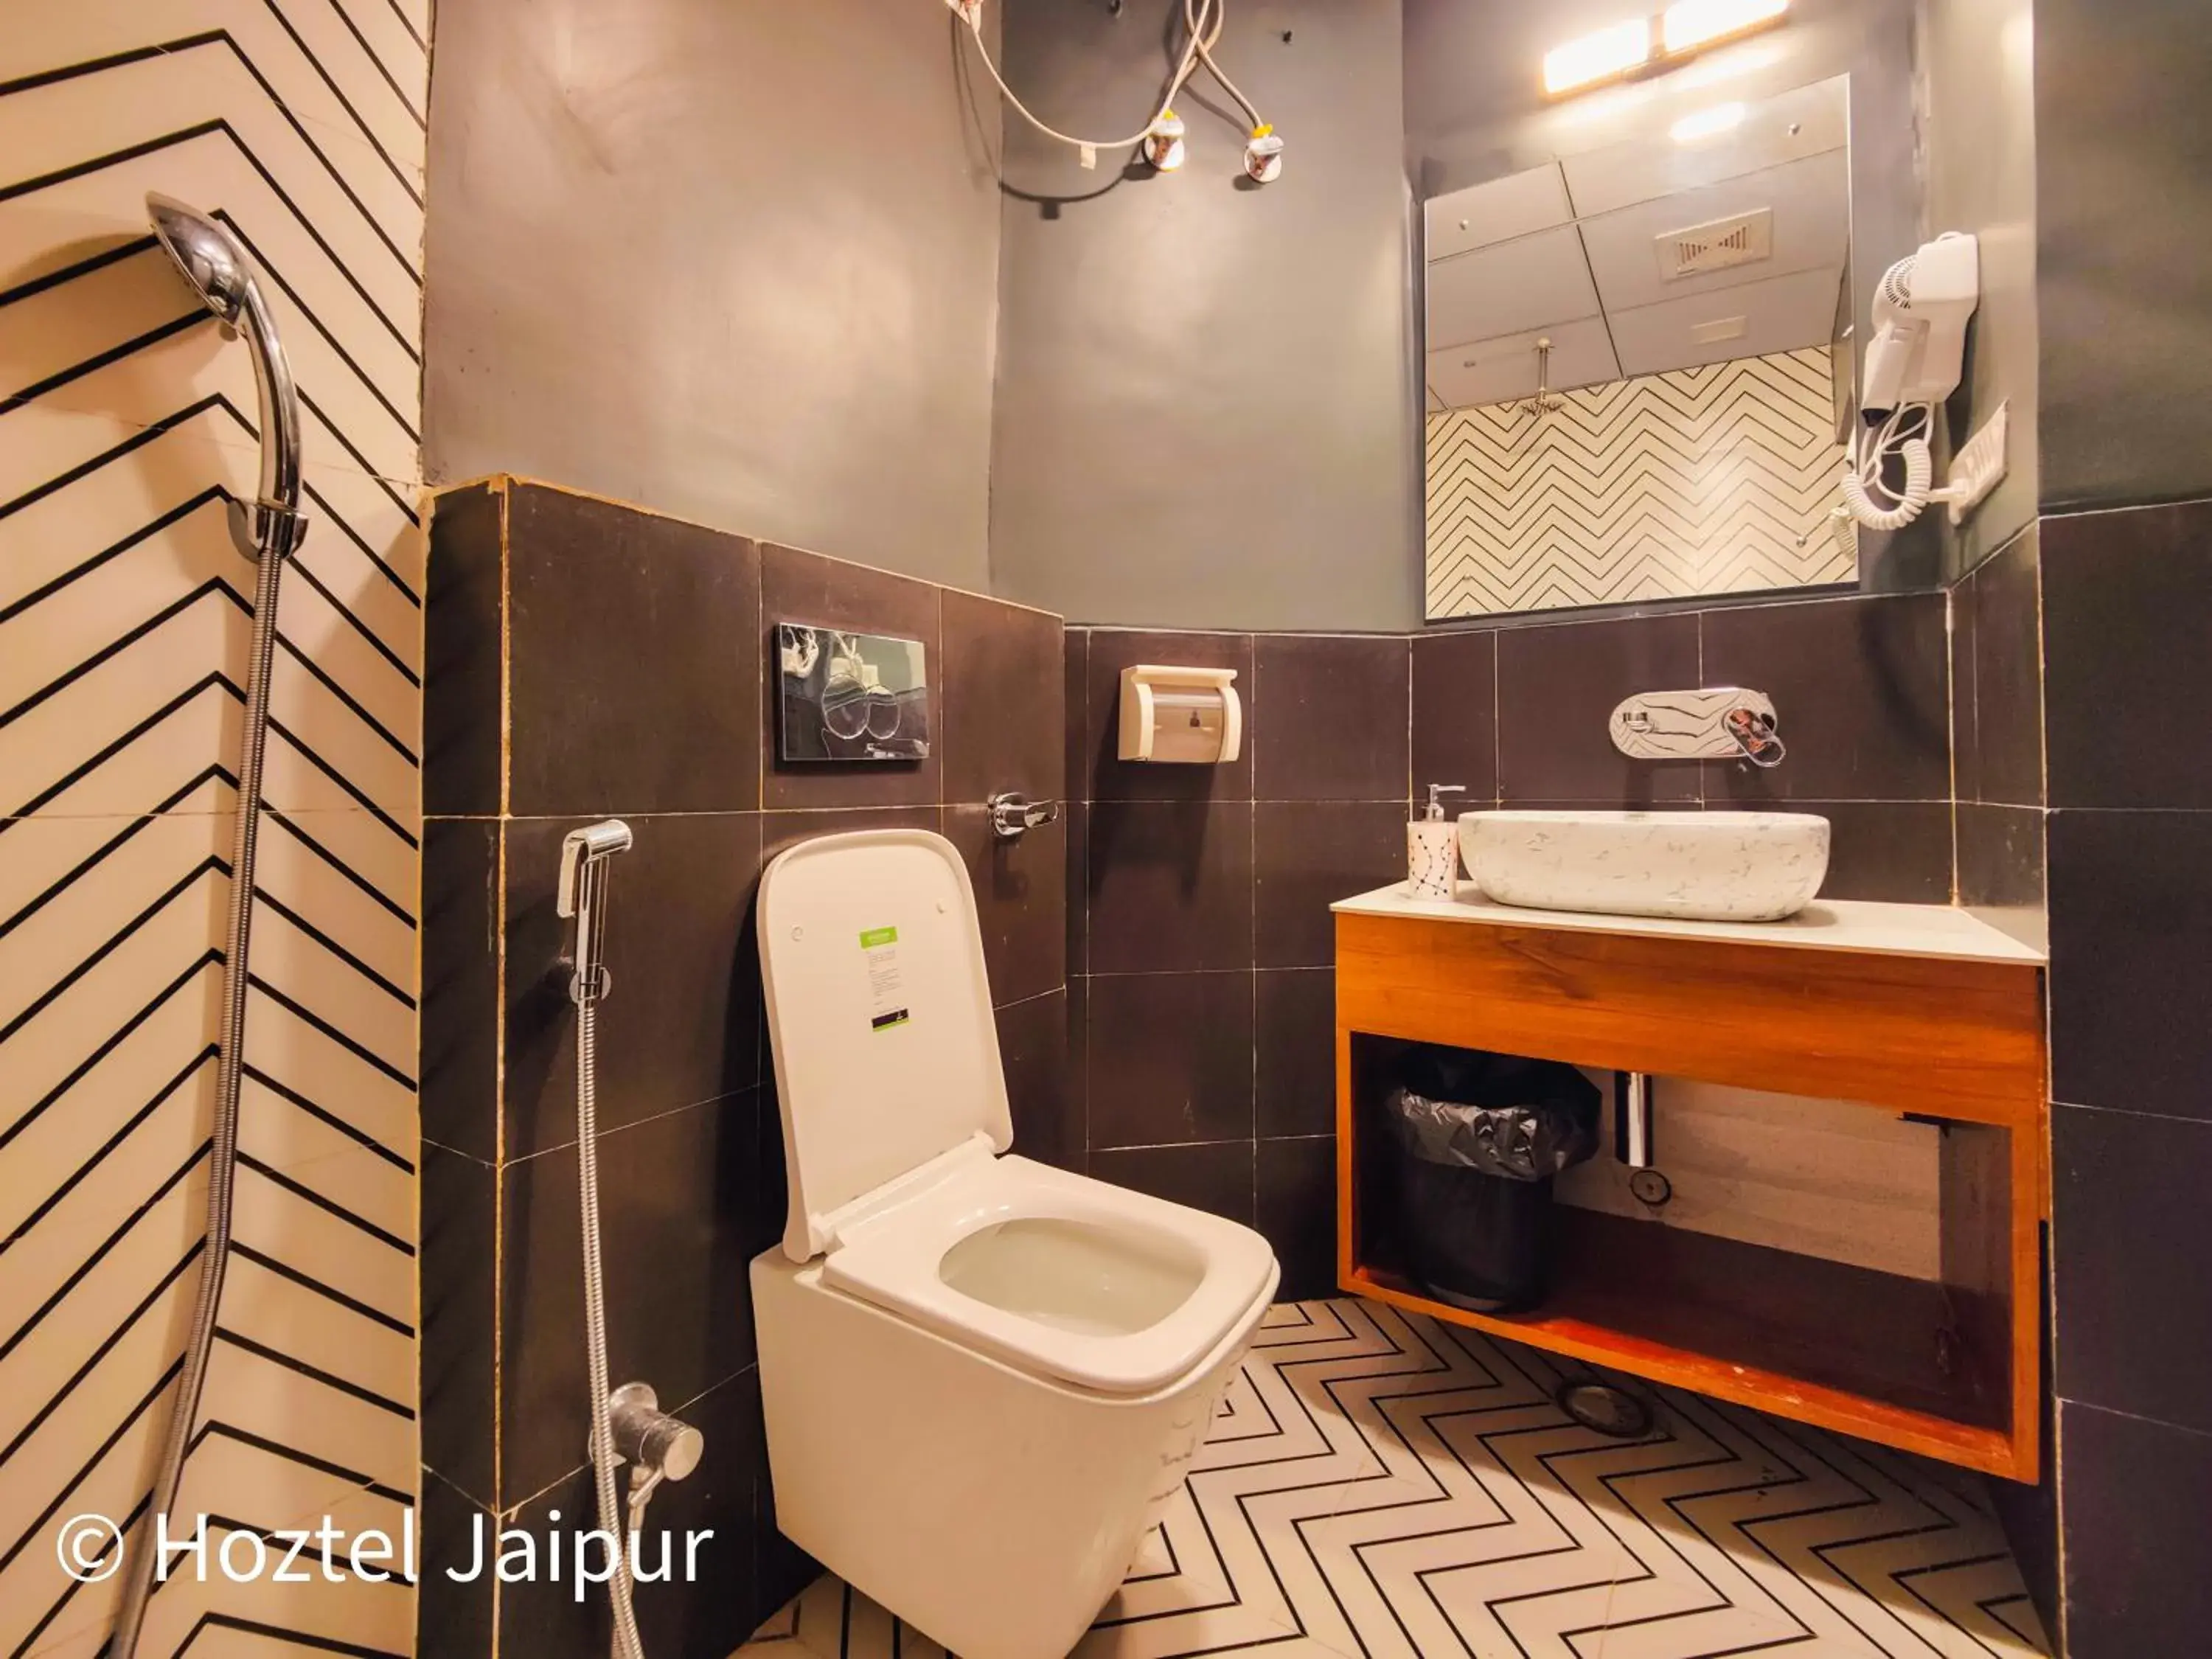 Toilet, Bathroom in Hoztel Jaipur